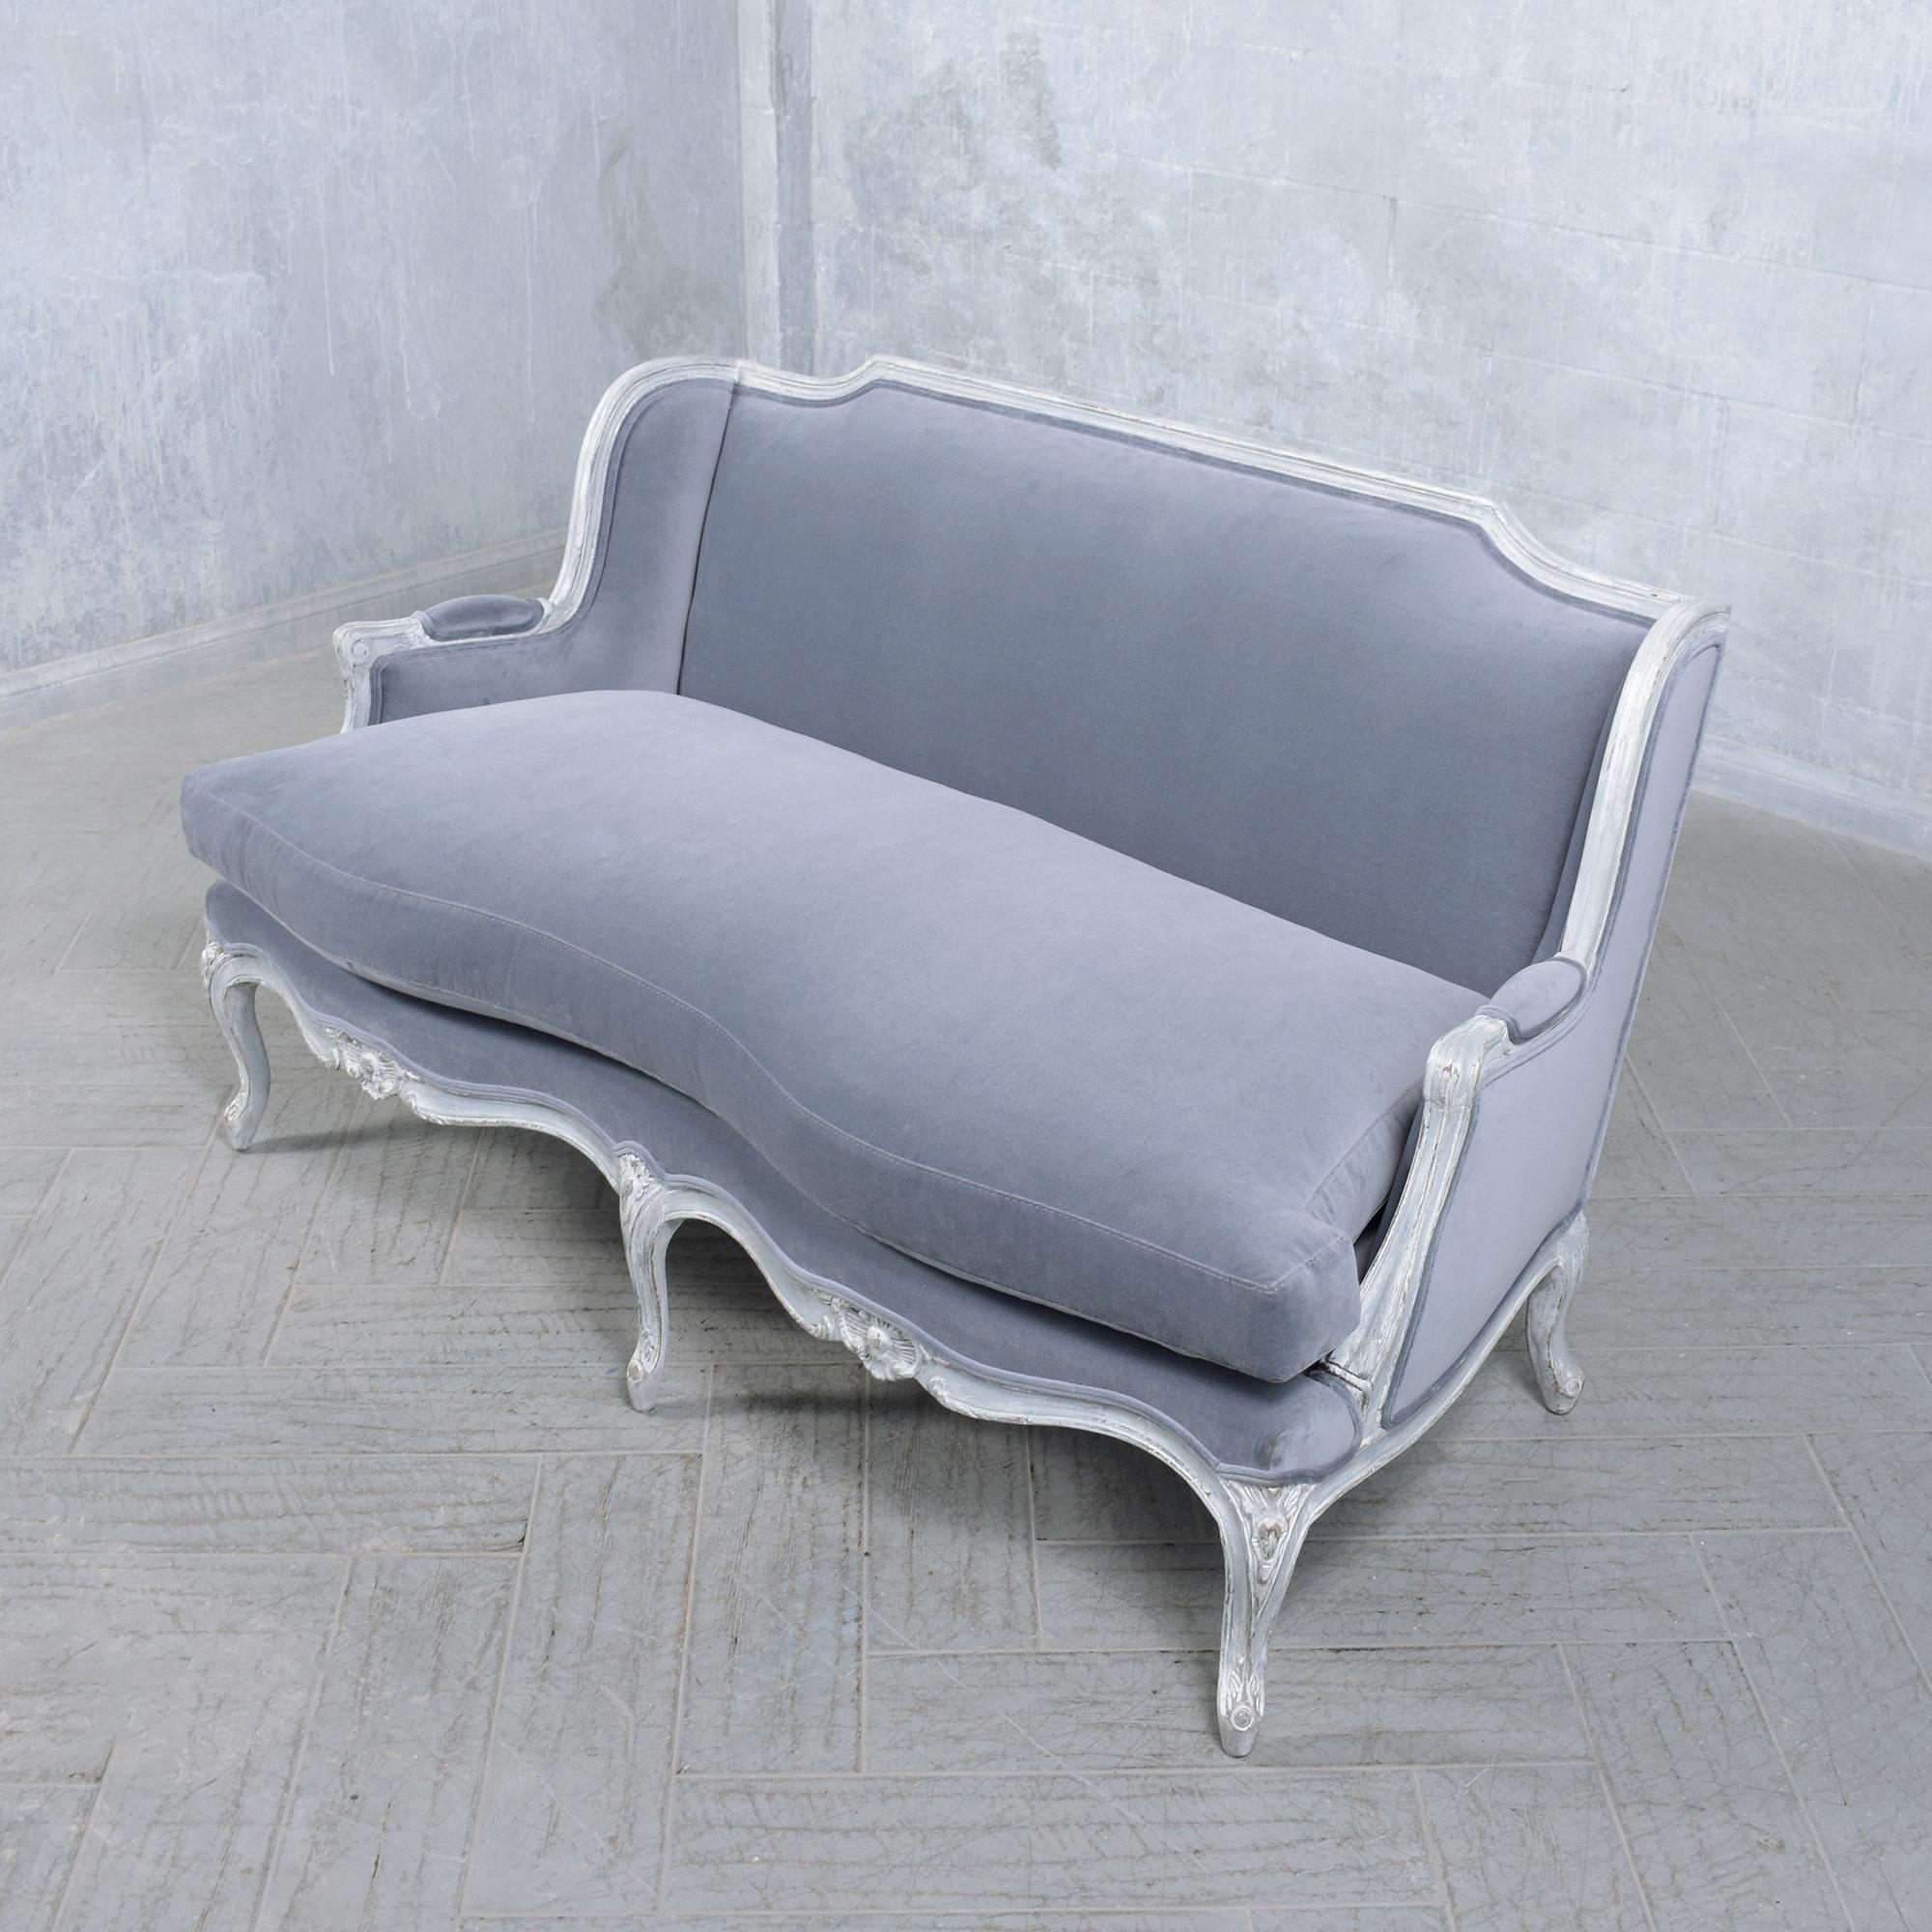 Entdecken Sie die Eleganz vergangener Zeiten mit unserem wunderschön restaurierten französischen Sessel im Stil Louis XV, einem Symbol zeitloser Anmut für das moderne Zuhause. Die aus robustem Massivholz gefertigte Liege wurde sorgfältig restauriert